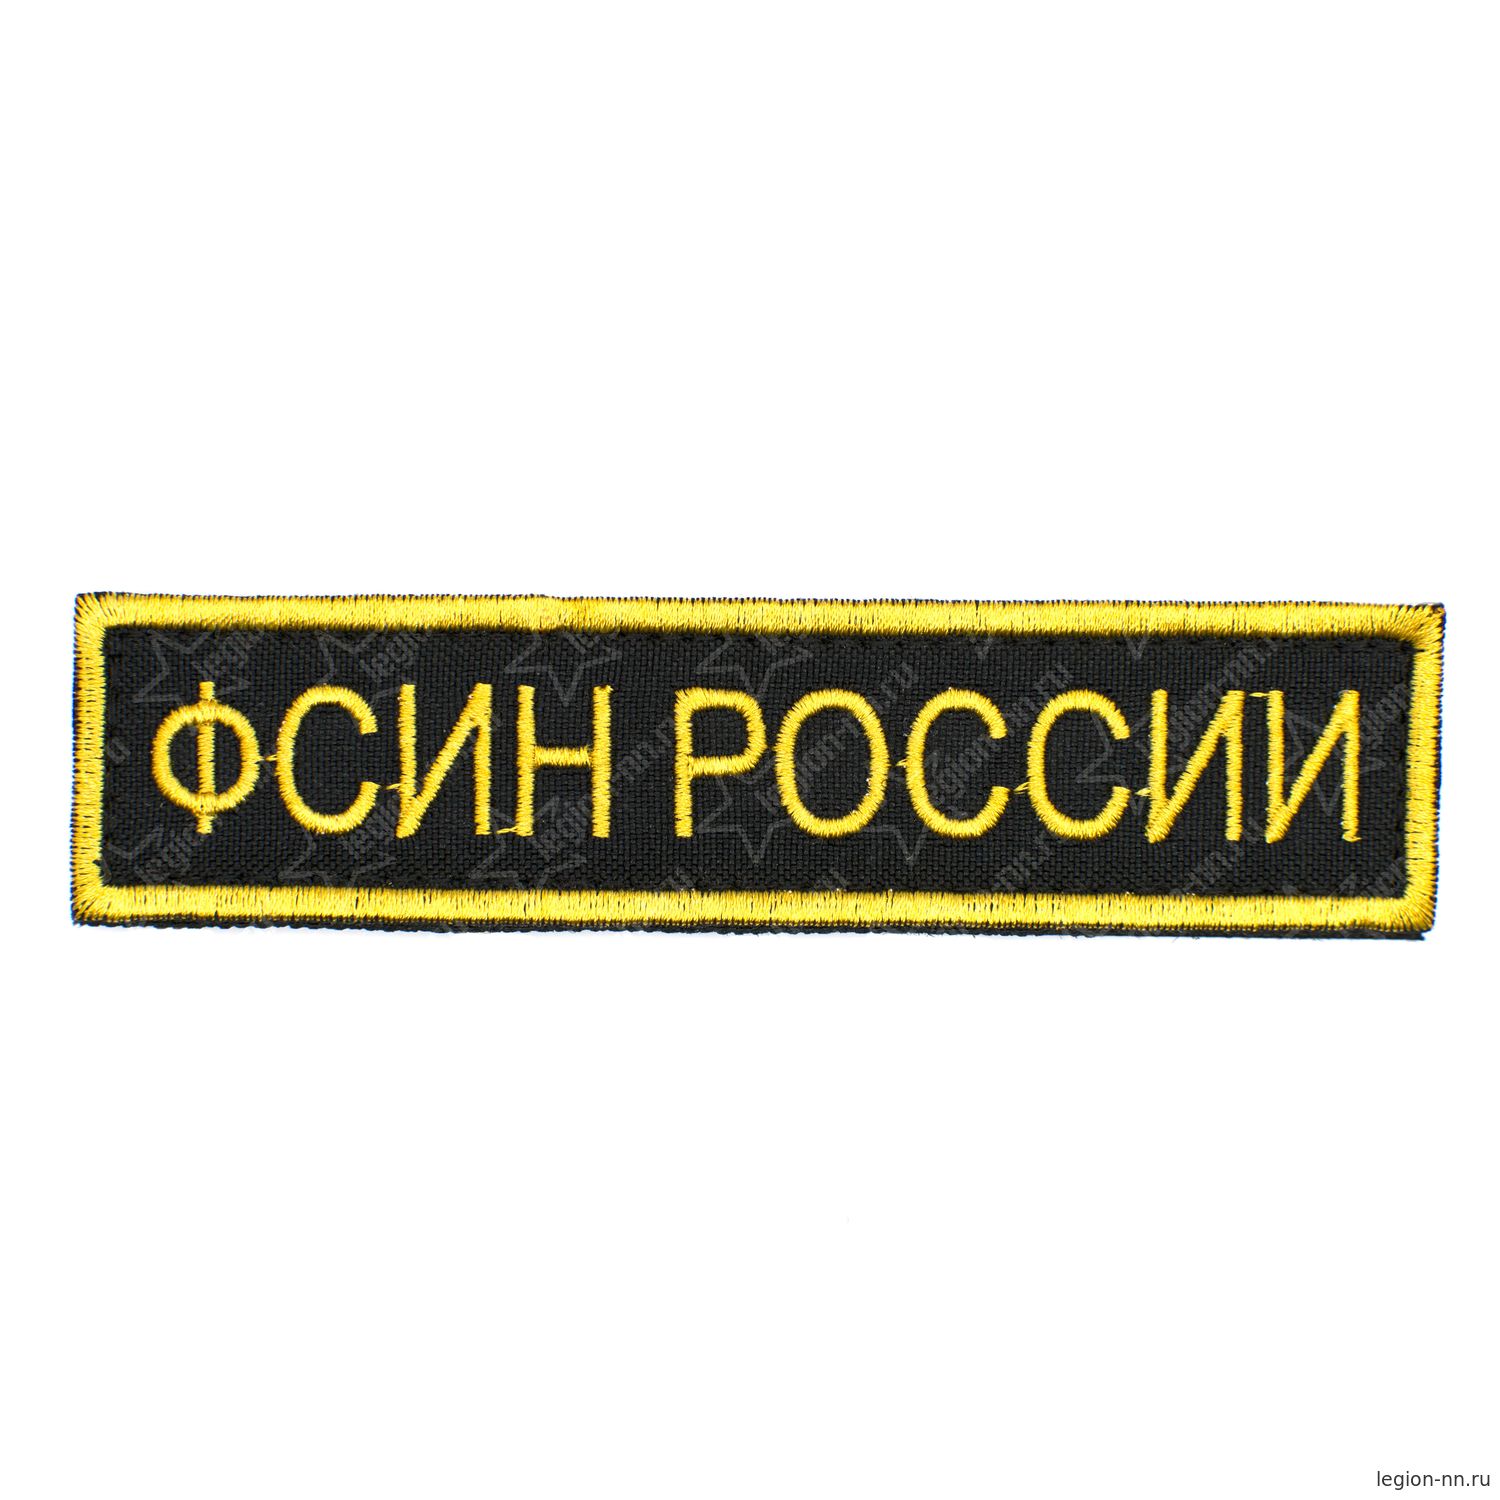 Шеврон вышитый на грудь, ФСИН РОССИИ 3*12 см черный фон желтые буквы на липучке